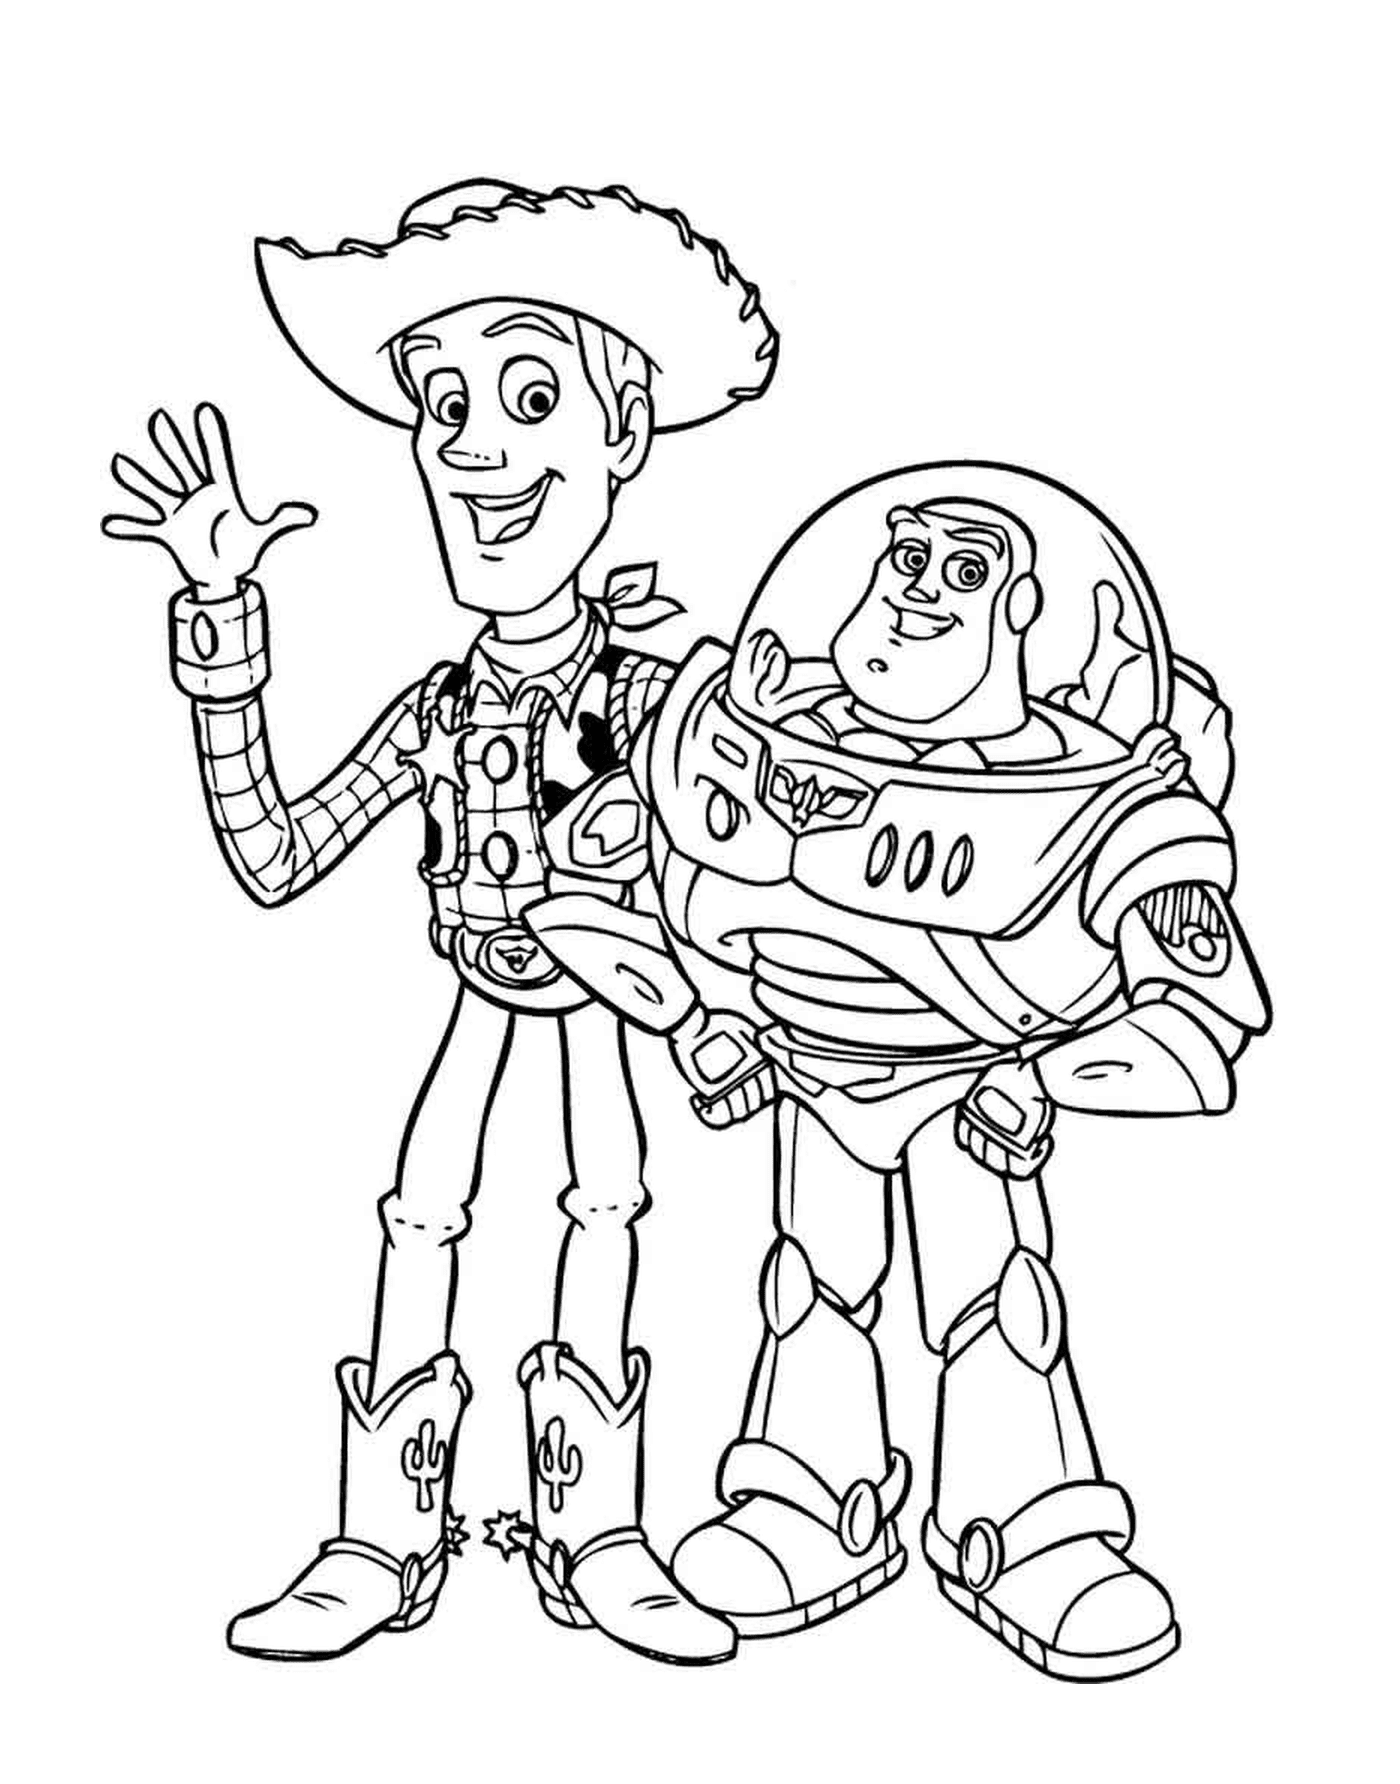   Buzz Lightyear et Woody, duo légendaire 